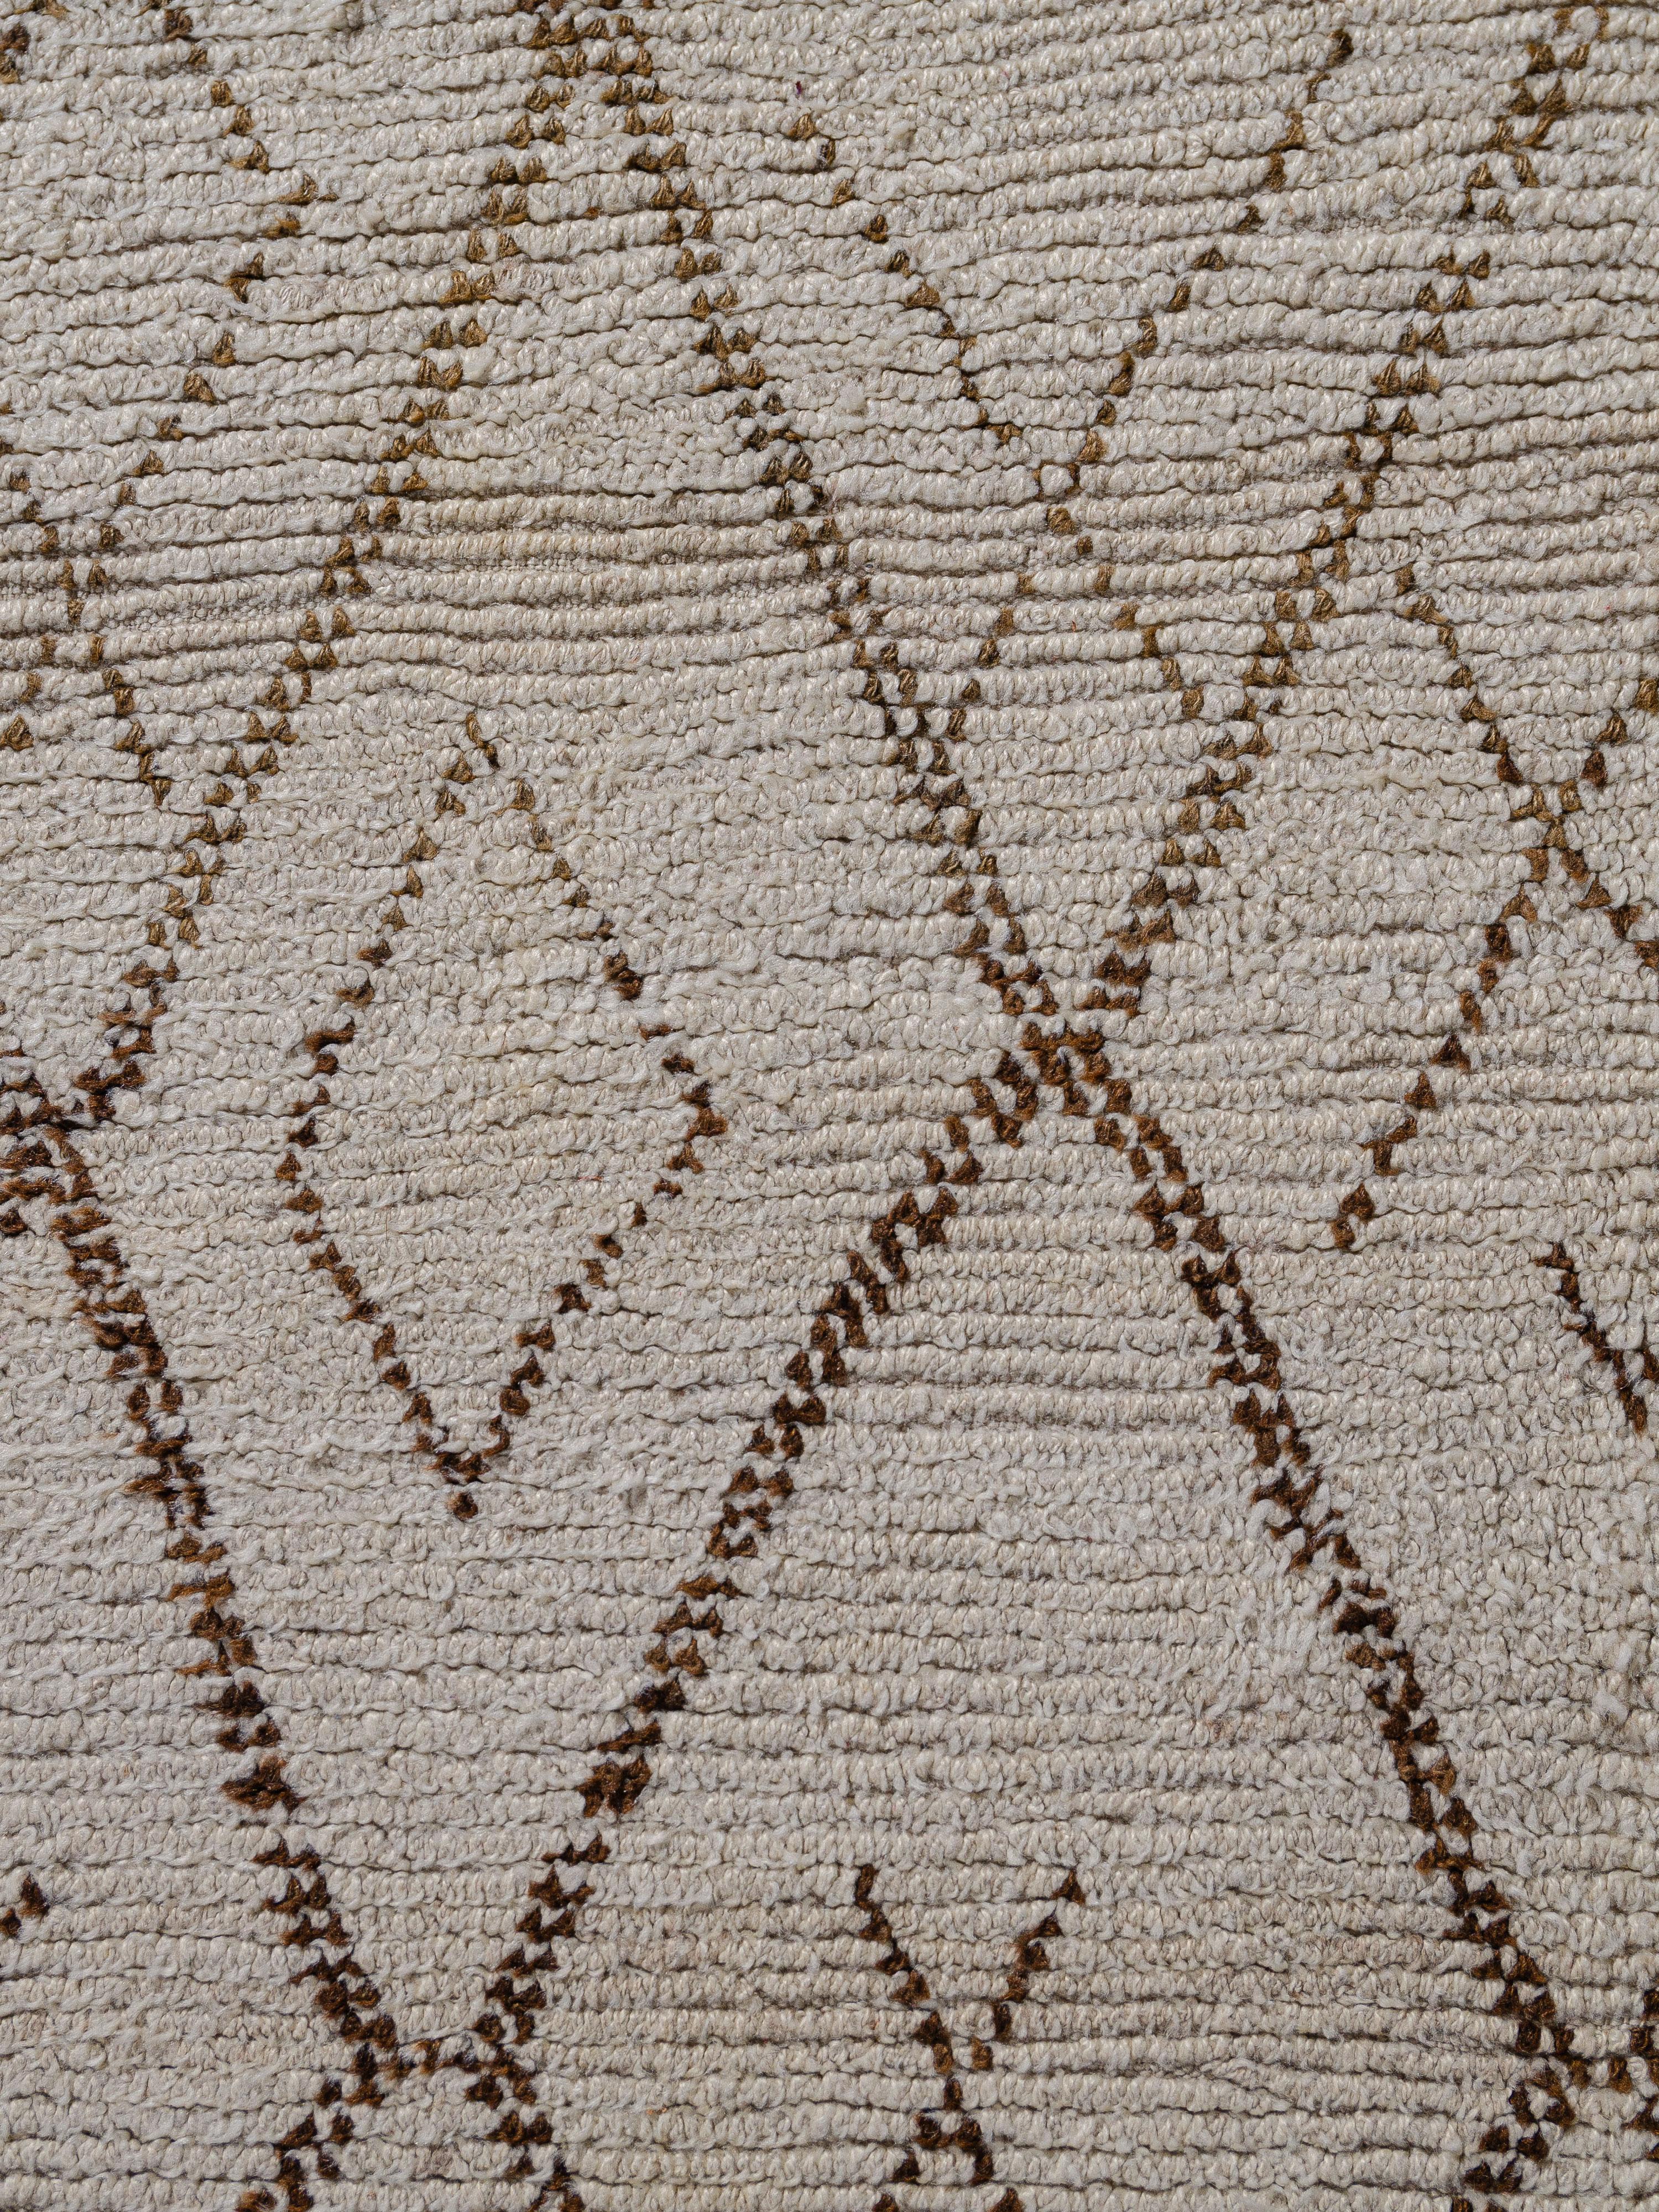 Plein de caractère avec son asymétrie et ses proportions inhabituelles, ce tapis vintage de Beni Ouarain illustre l'esprit de l'artisanat que l'on retrouve dans les arts berbères. Les grands motifs féminins centraux en forme de losange sont flanqués